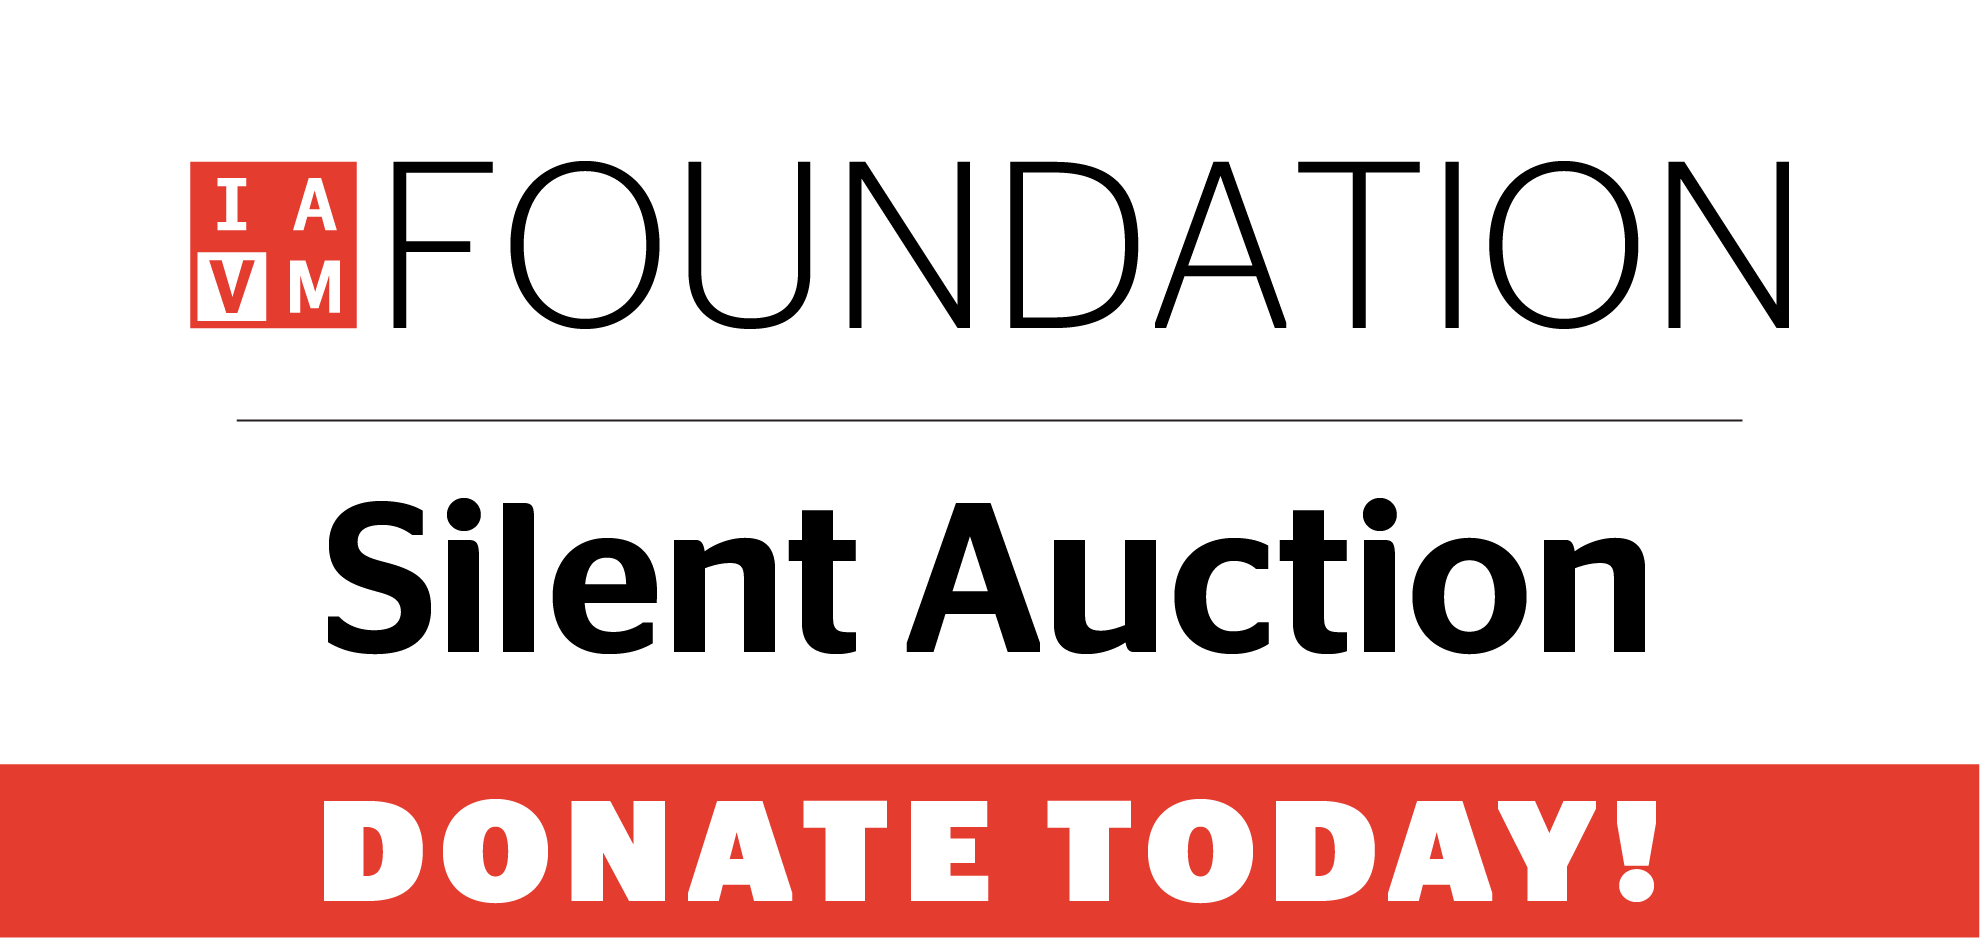 IAVM Foundation Silent Auction